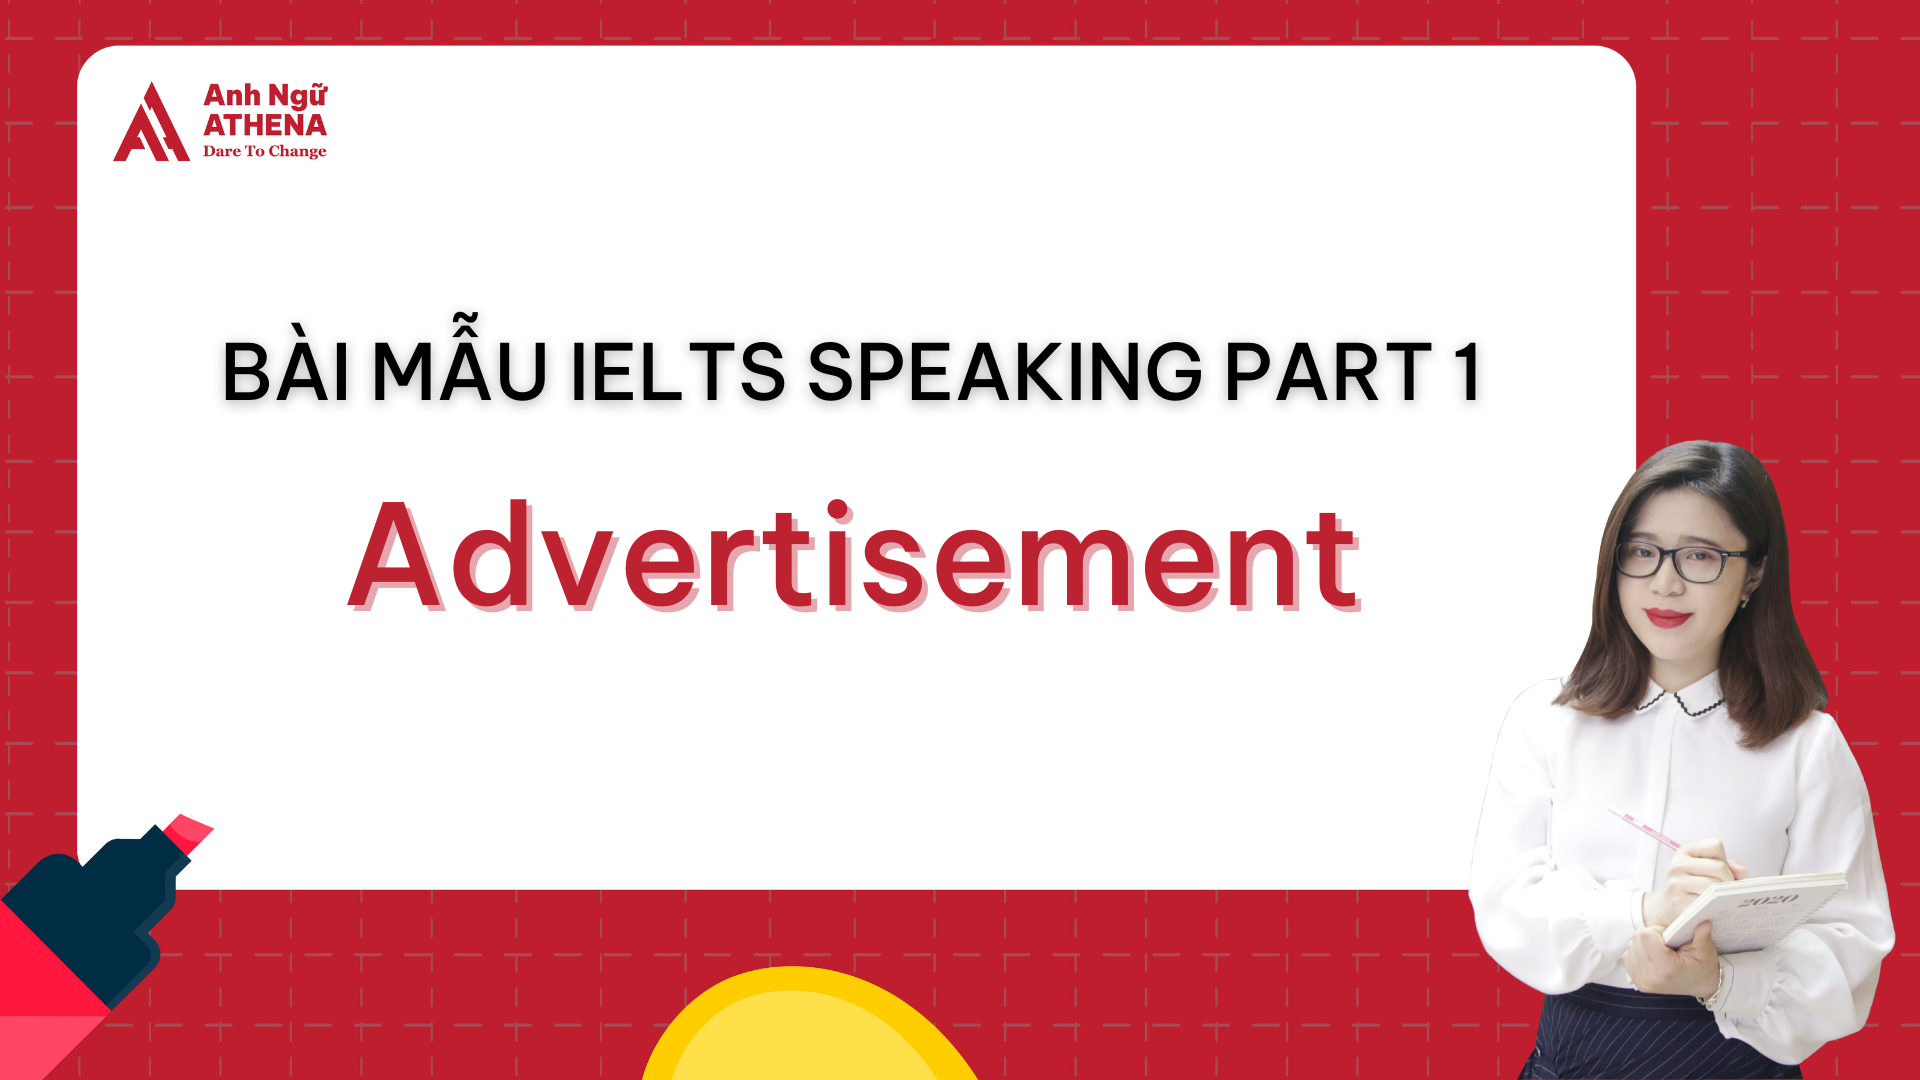 Bài mẫu IELTS Speaking Part 1 - Topic: Advertisement